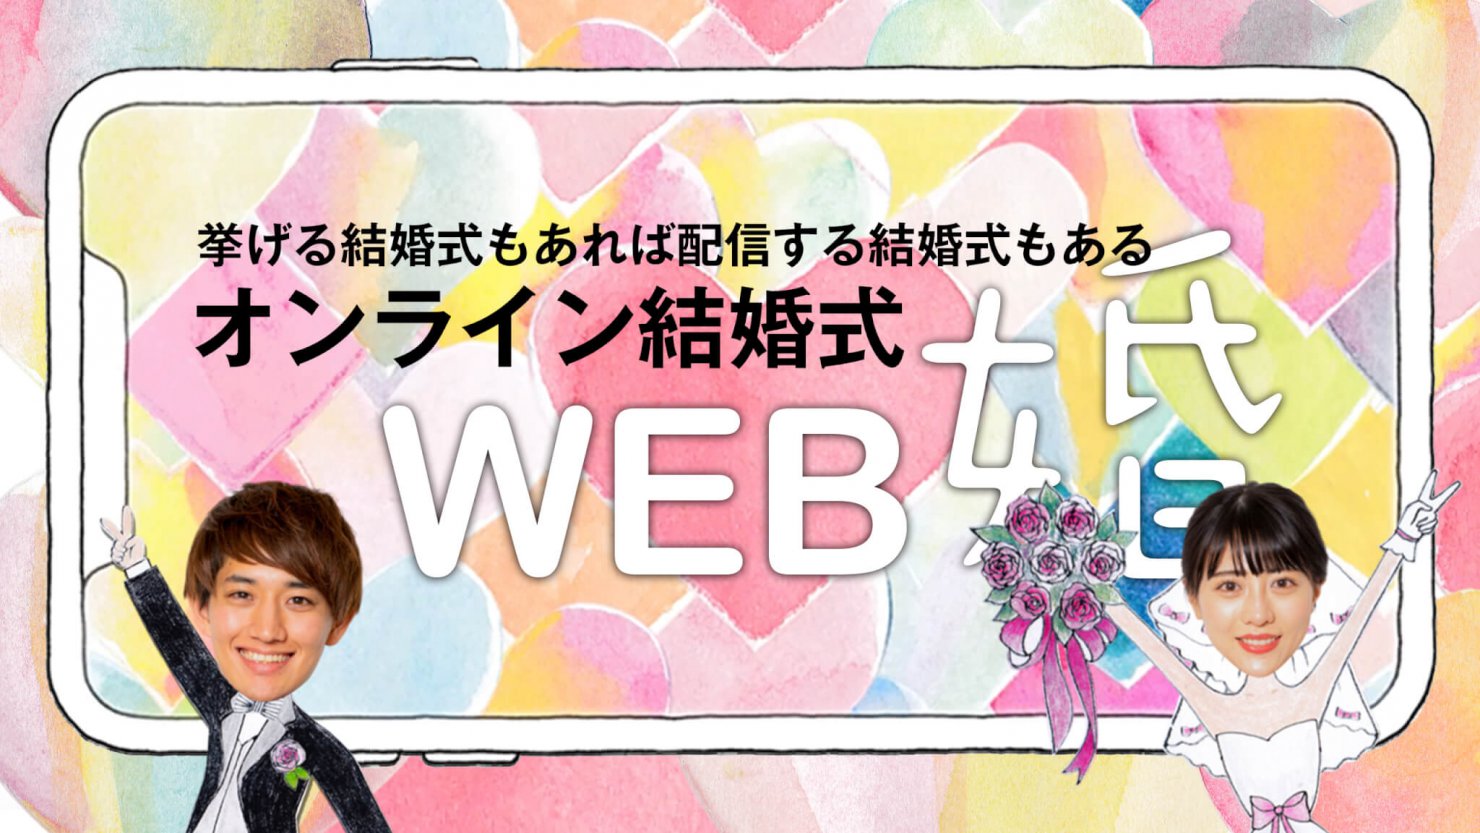 リモート結婚式 Web婚 をテレビ朝日スーパーjチャンネルで紹介